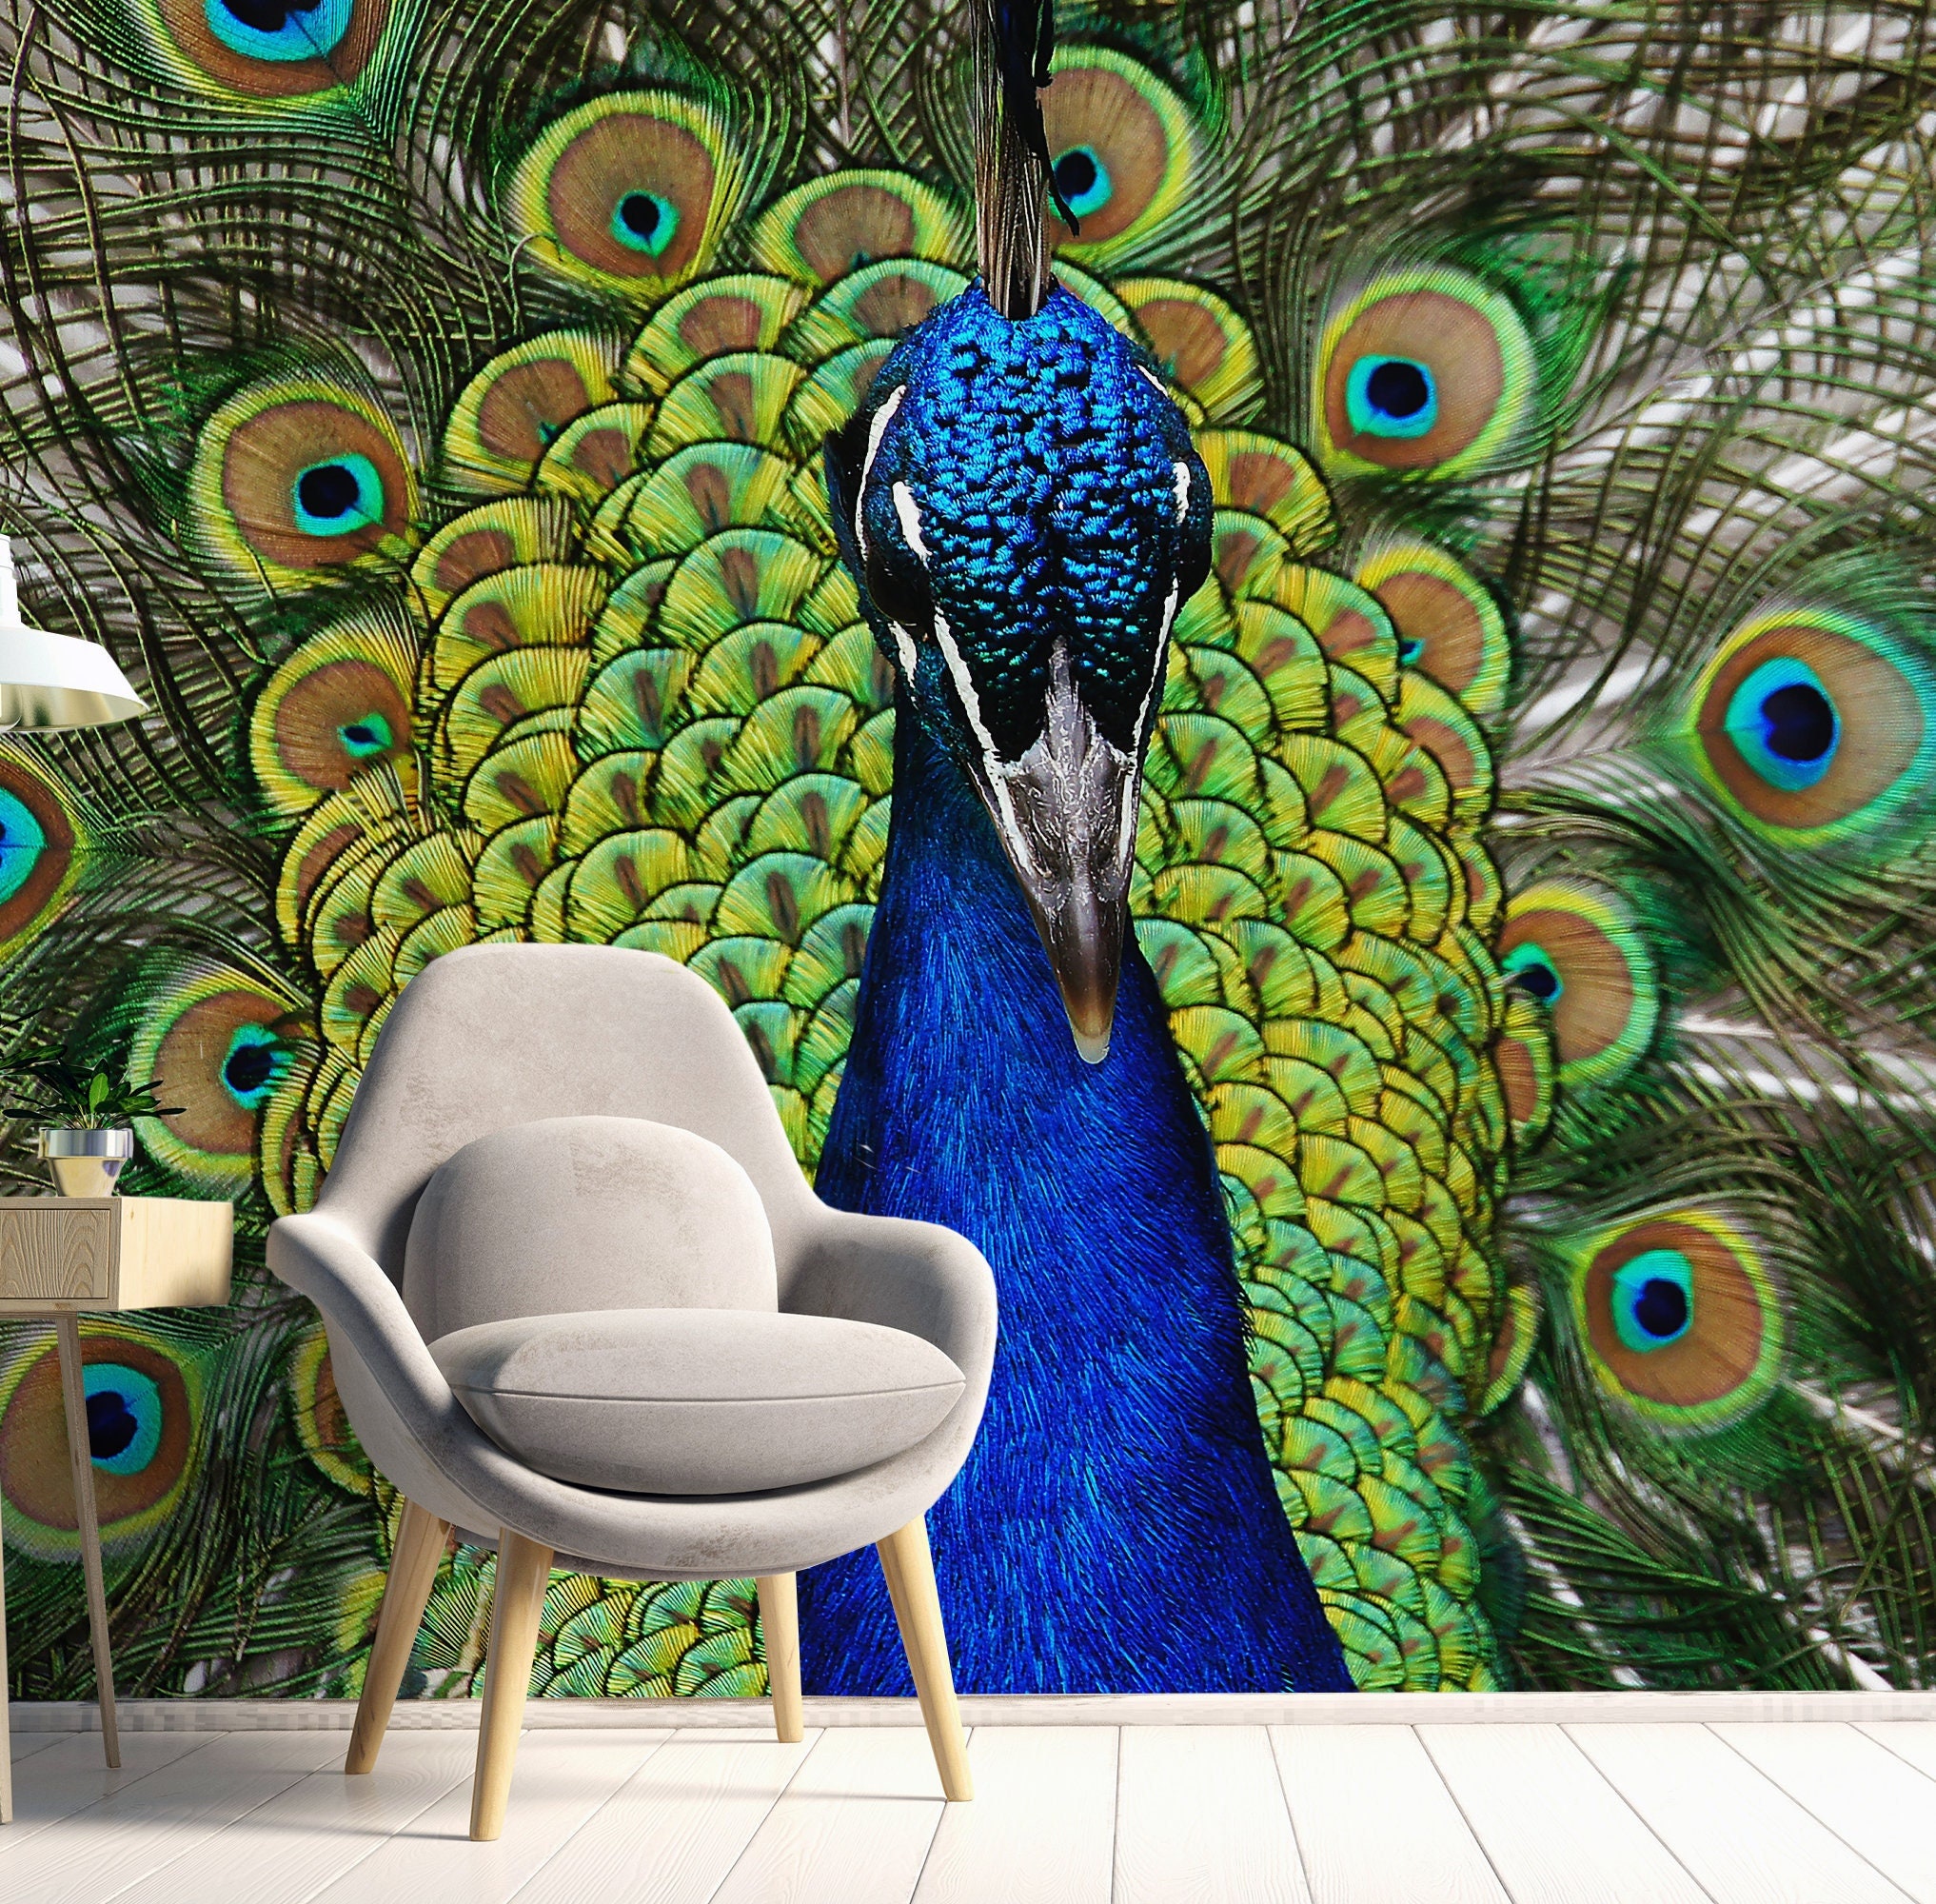 HD peacock wallpapers | Peakpx